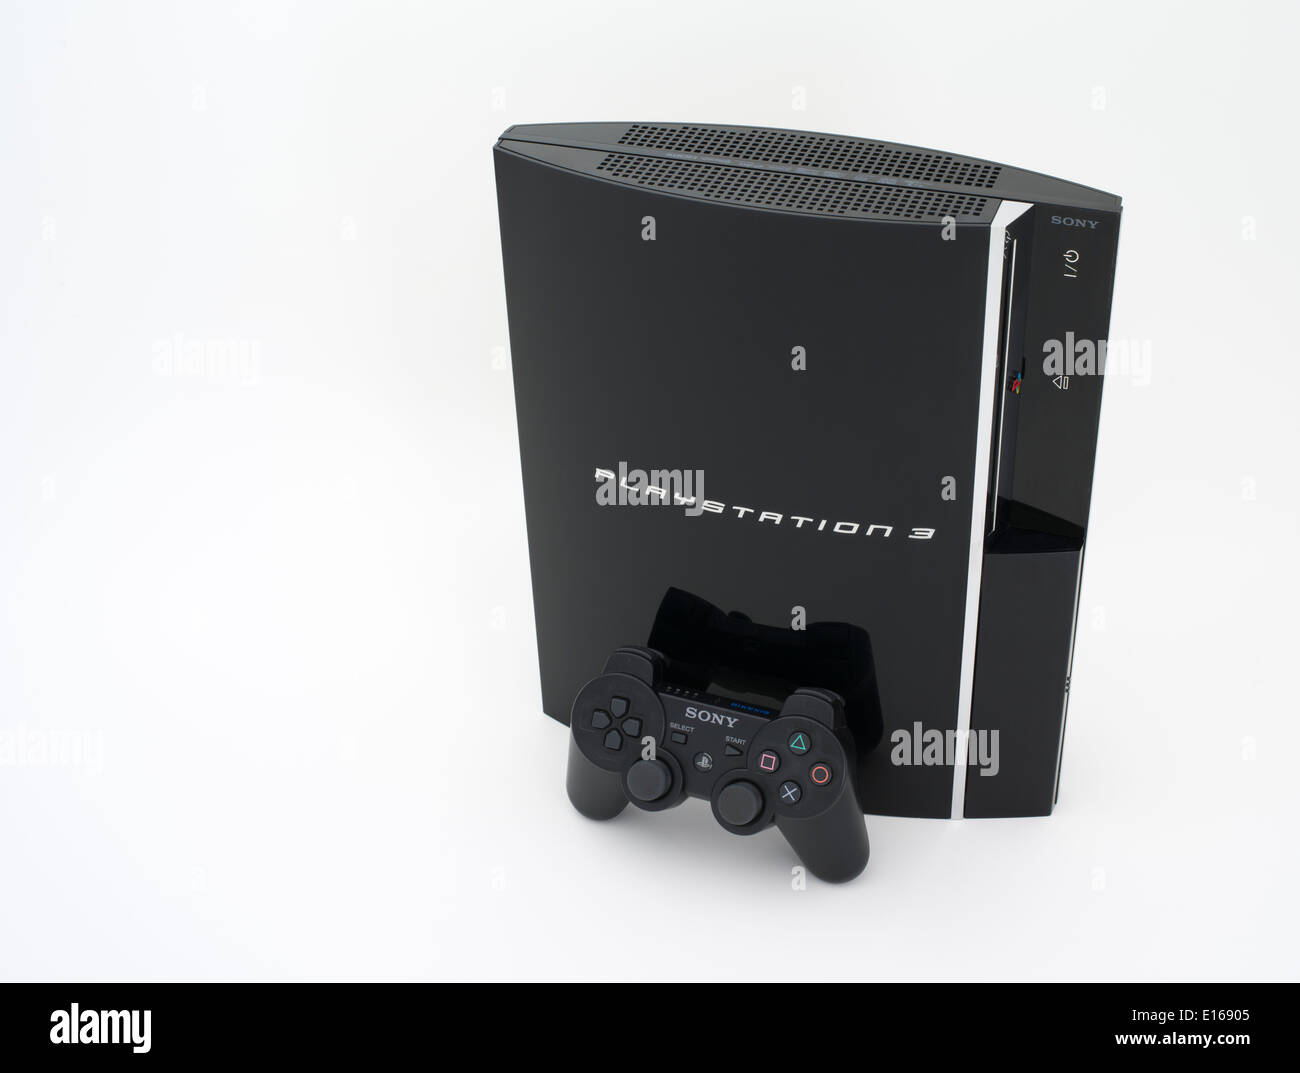 Playstation 3 immagini e fotografie stock ad alta risoluzione - Alamy